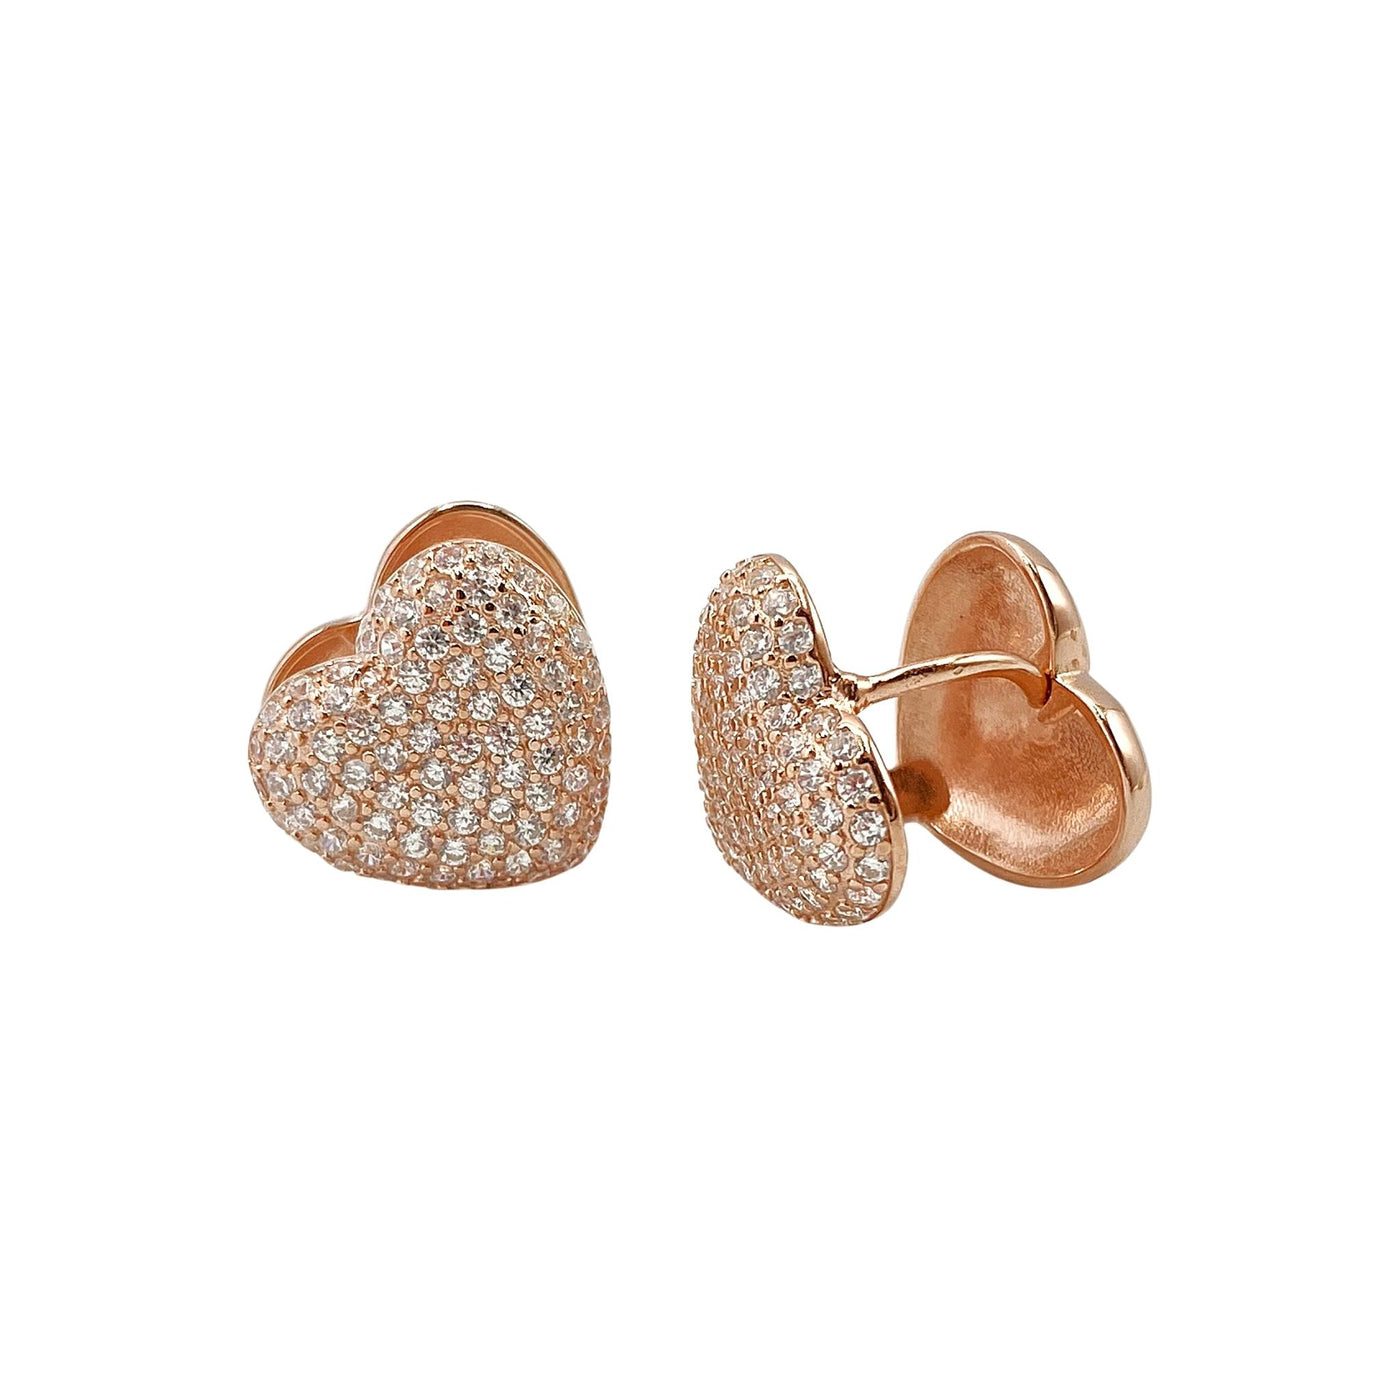 Silver double heart-shaped earrings - 11x12 mm